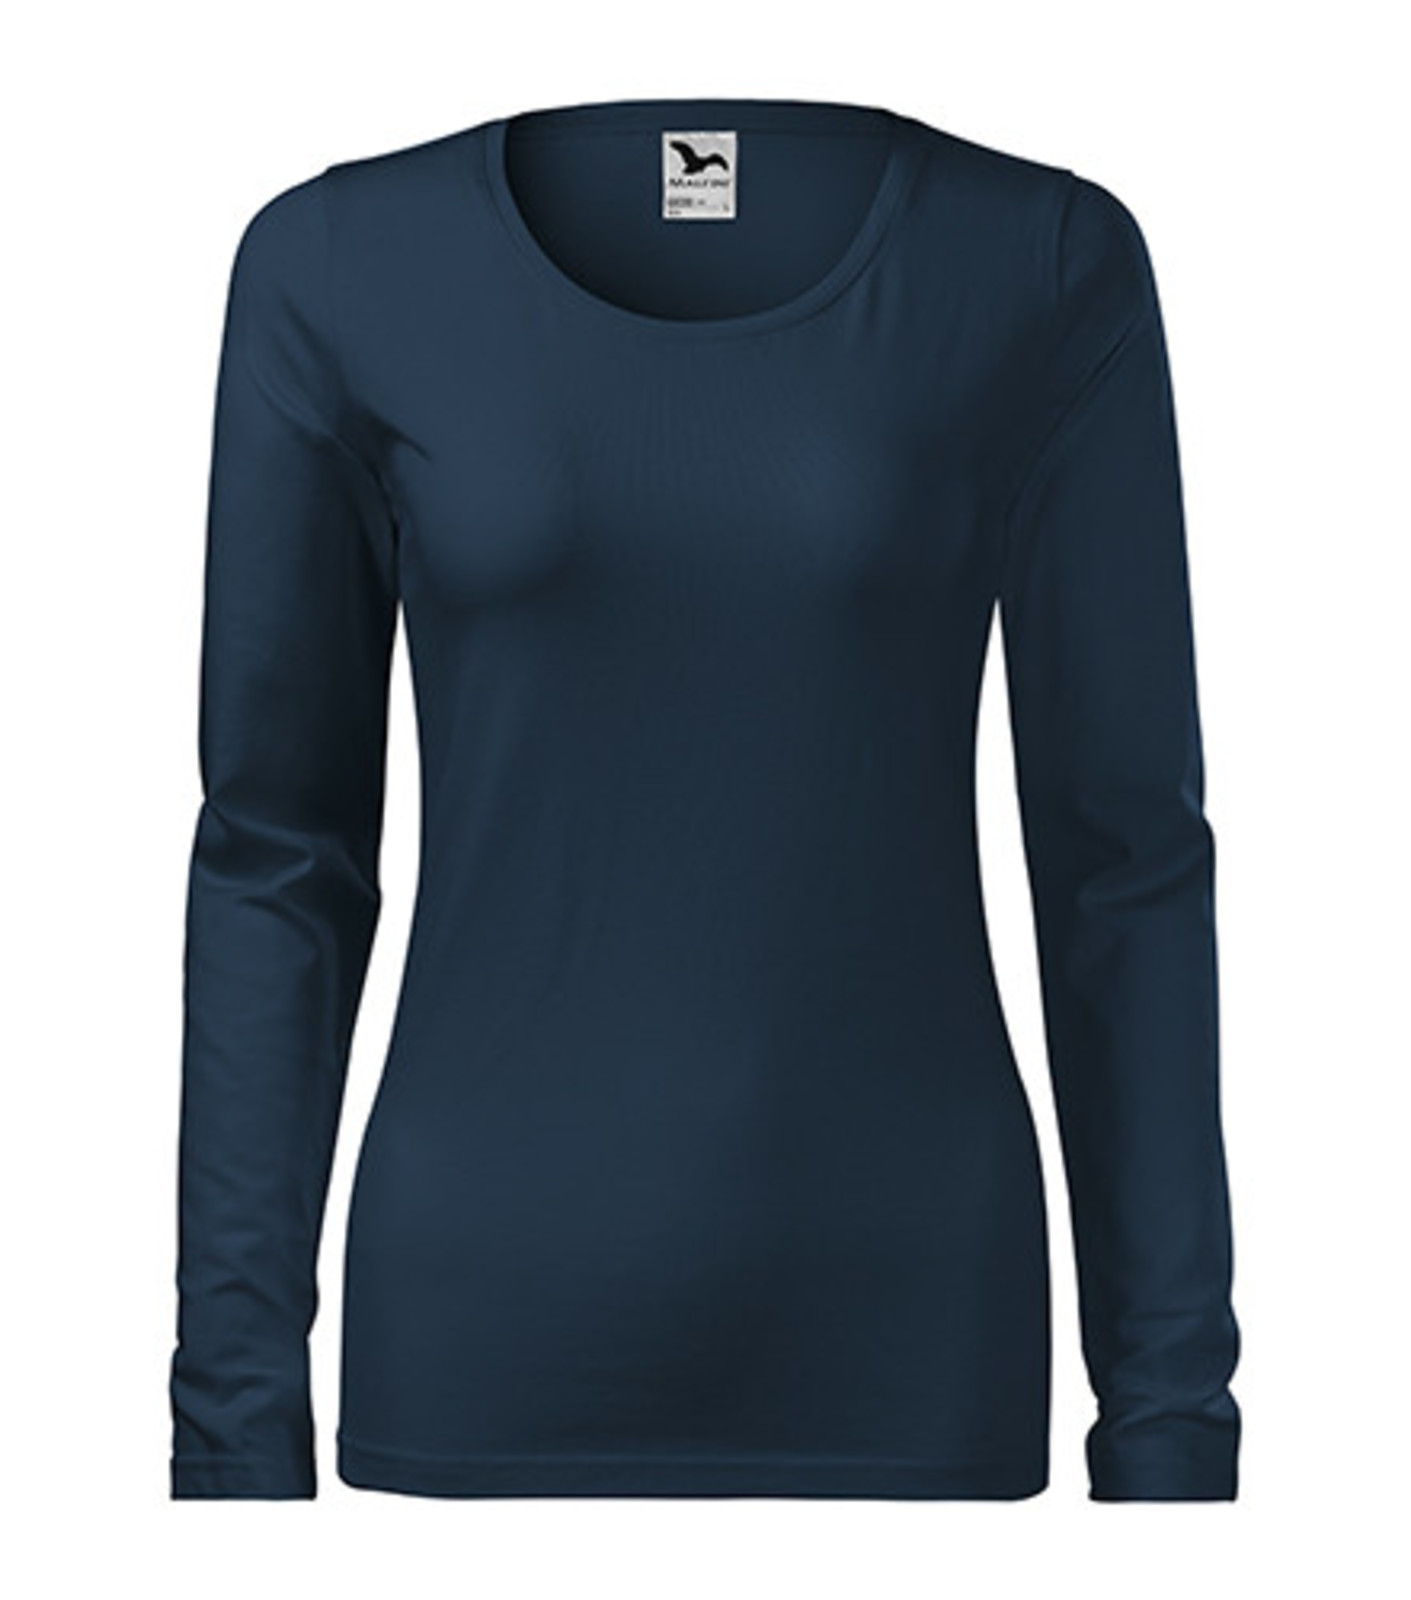 Dámske tričko s dlhým rukávom Adler Slim 139 - veľkosť: M, farba: tmavo modrá